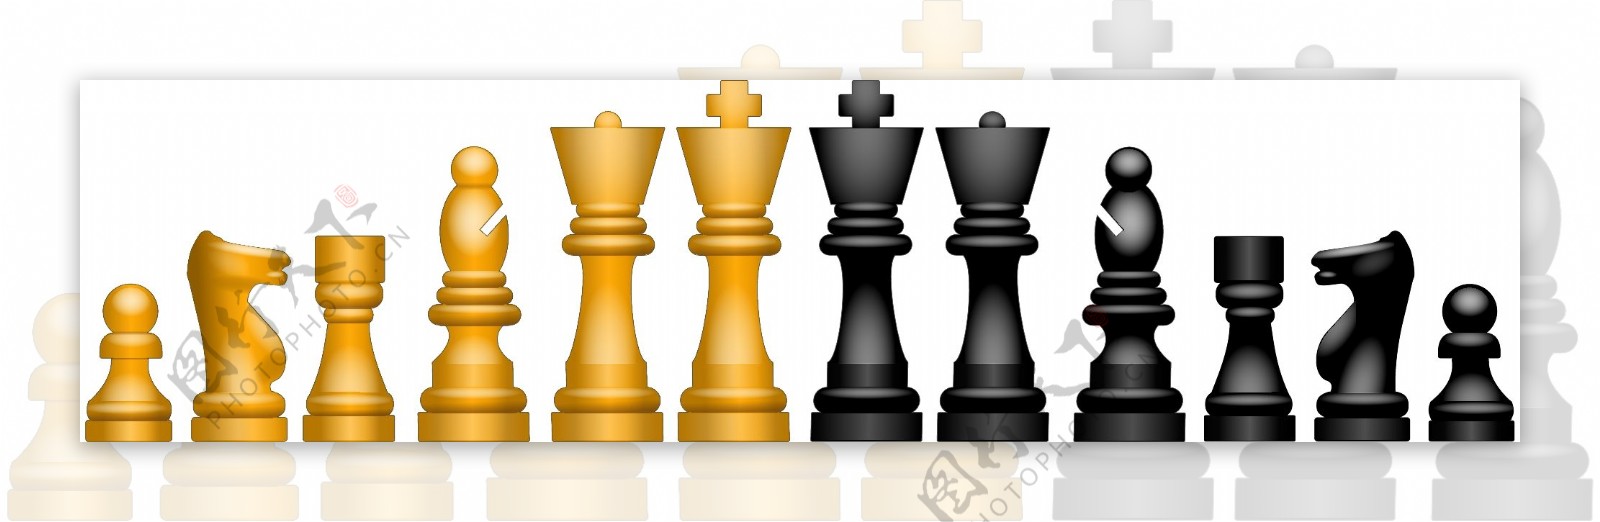 国际象棋游戏矢量